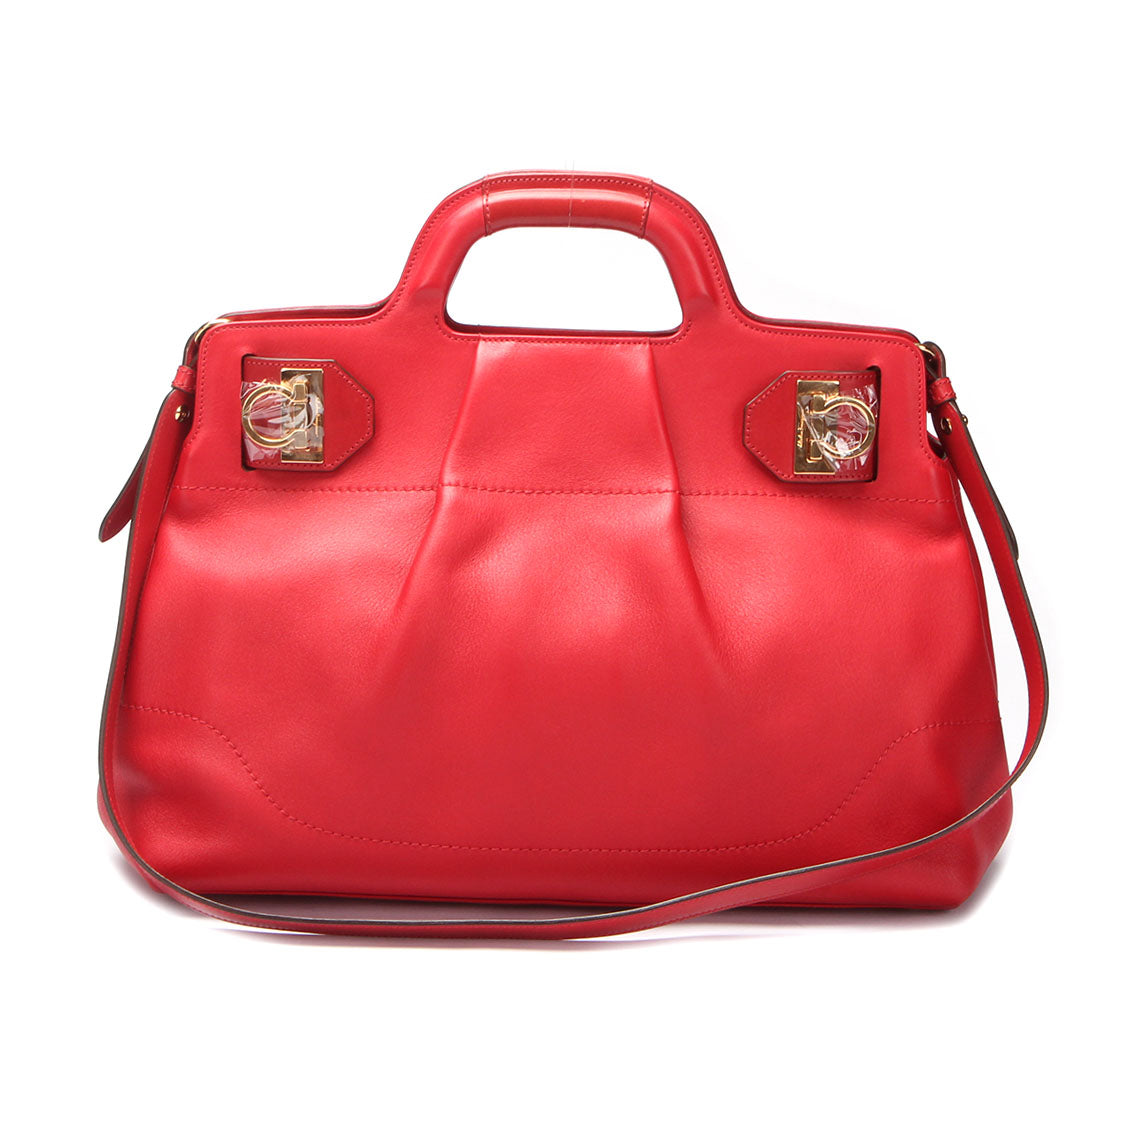 Gancini Leather Handbag DY-21 C465